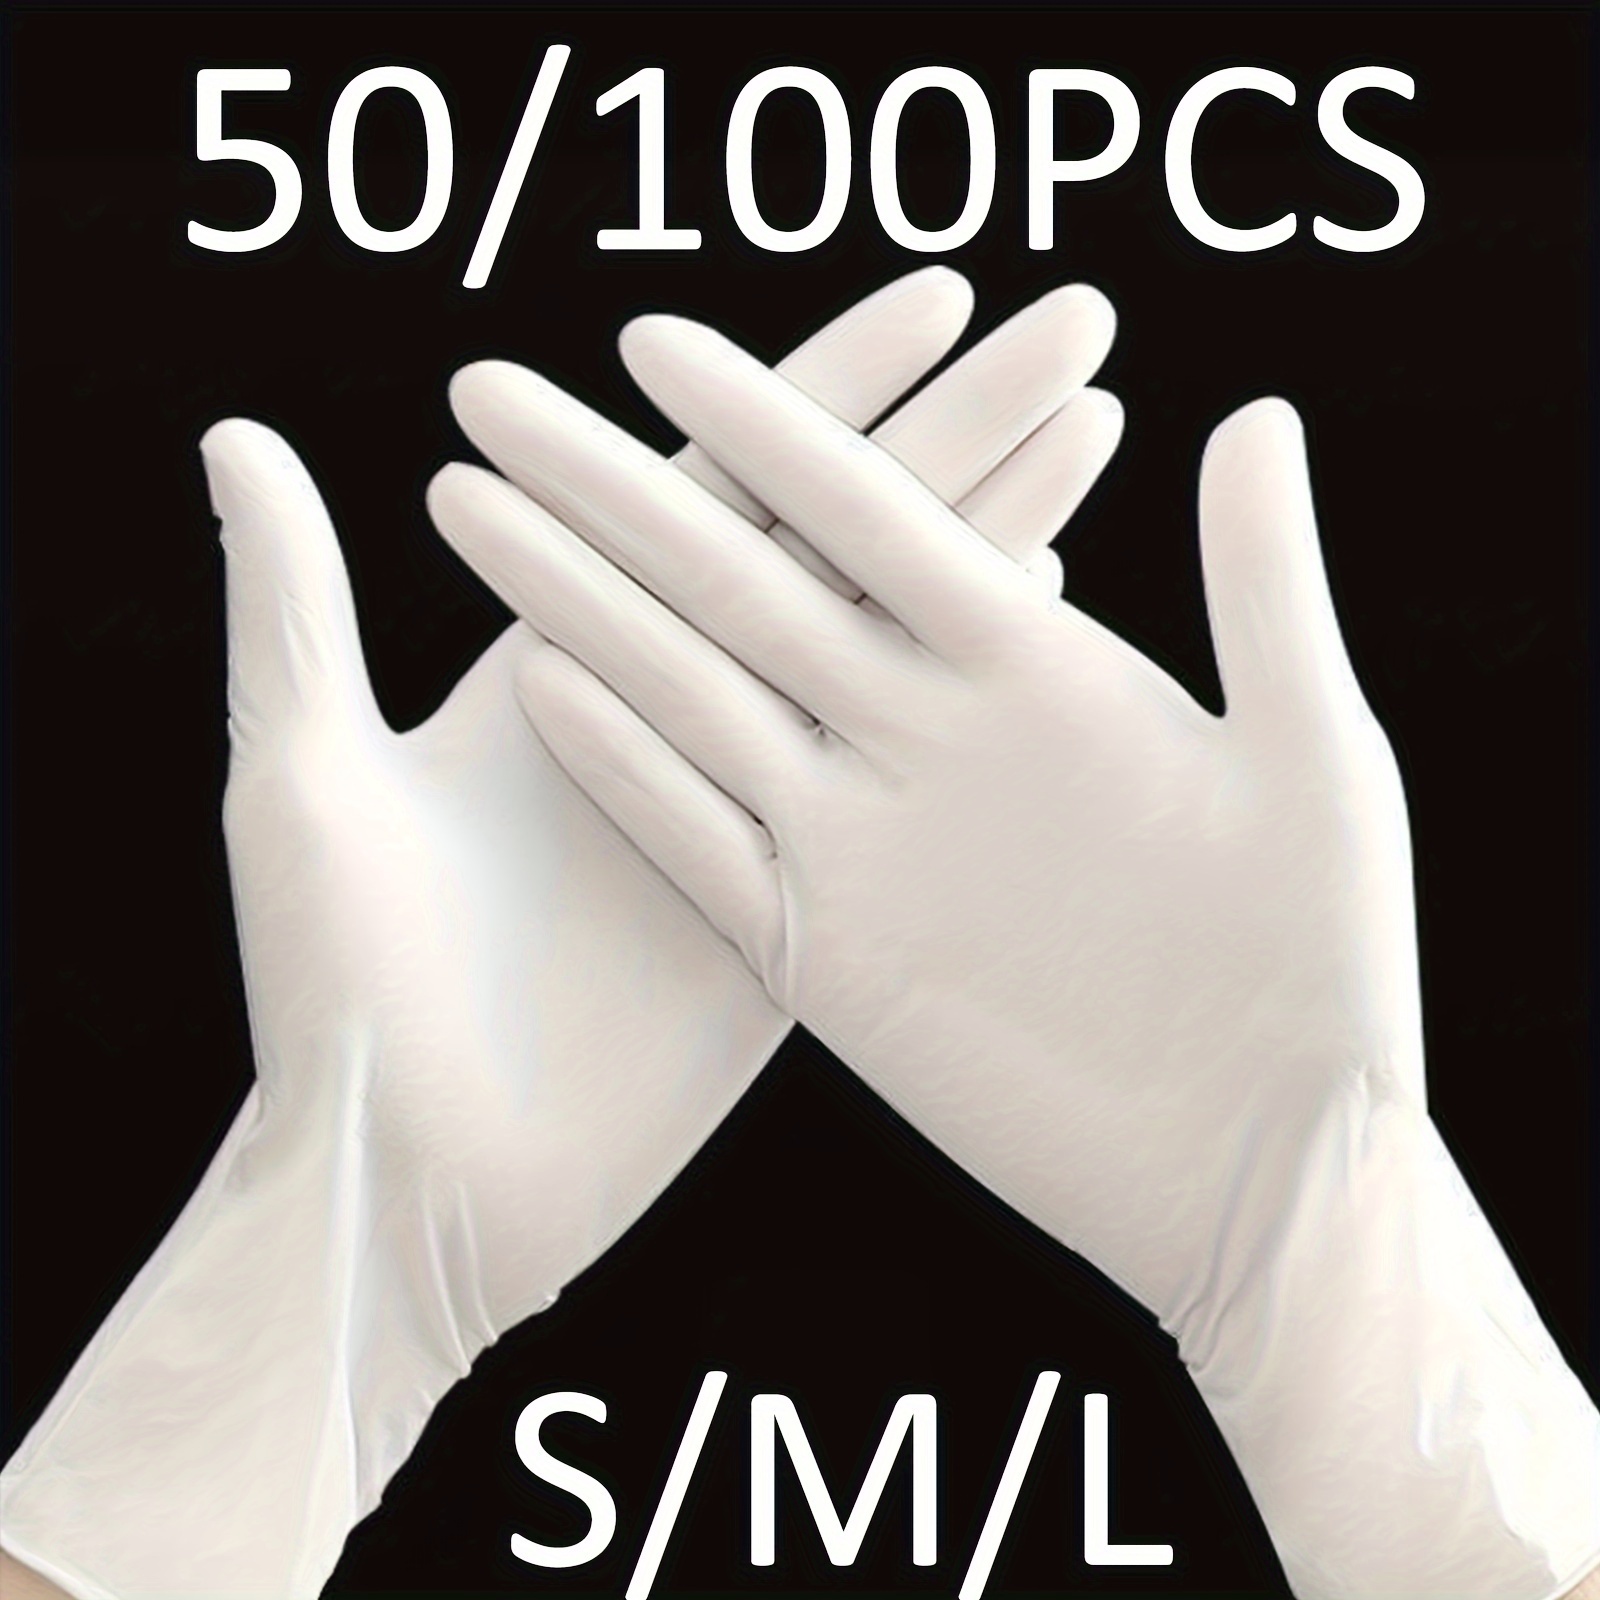 gants blancs pour les professionnels 